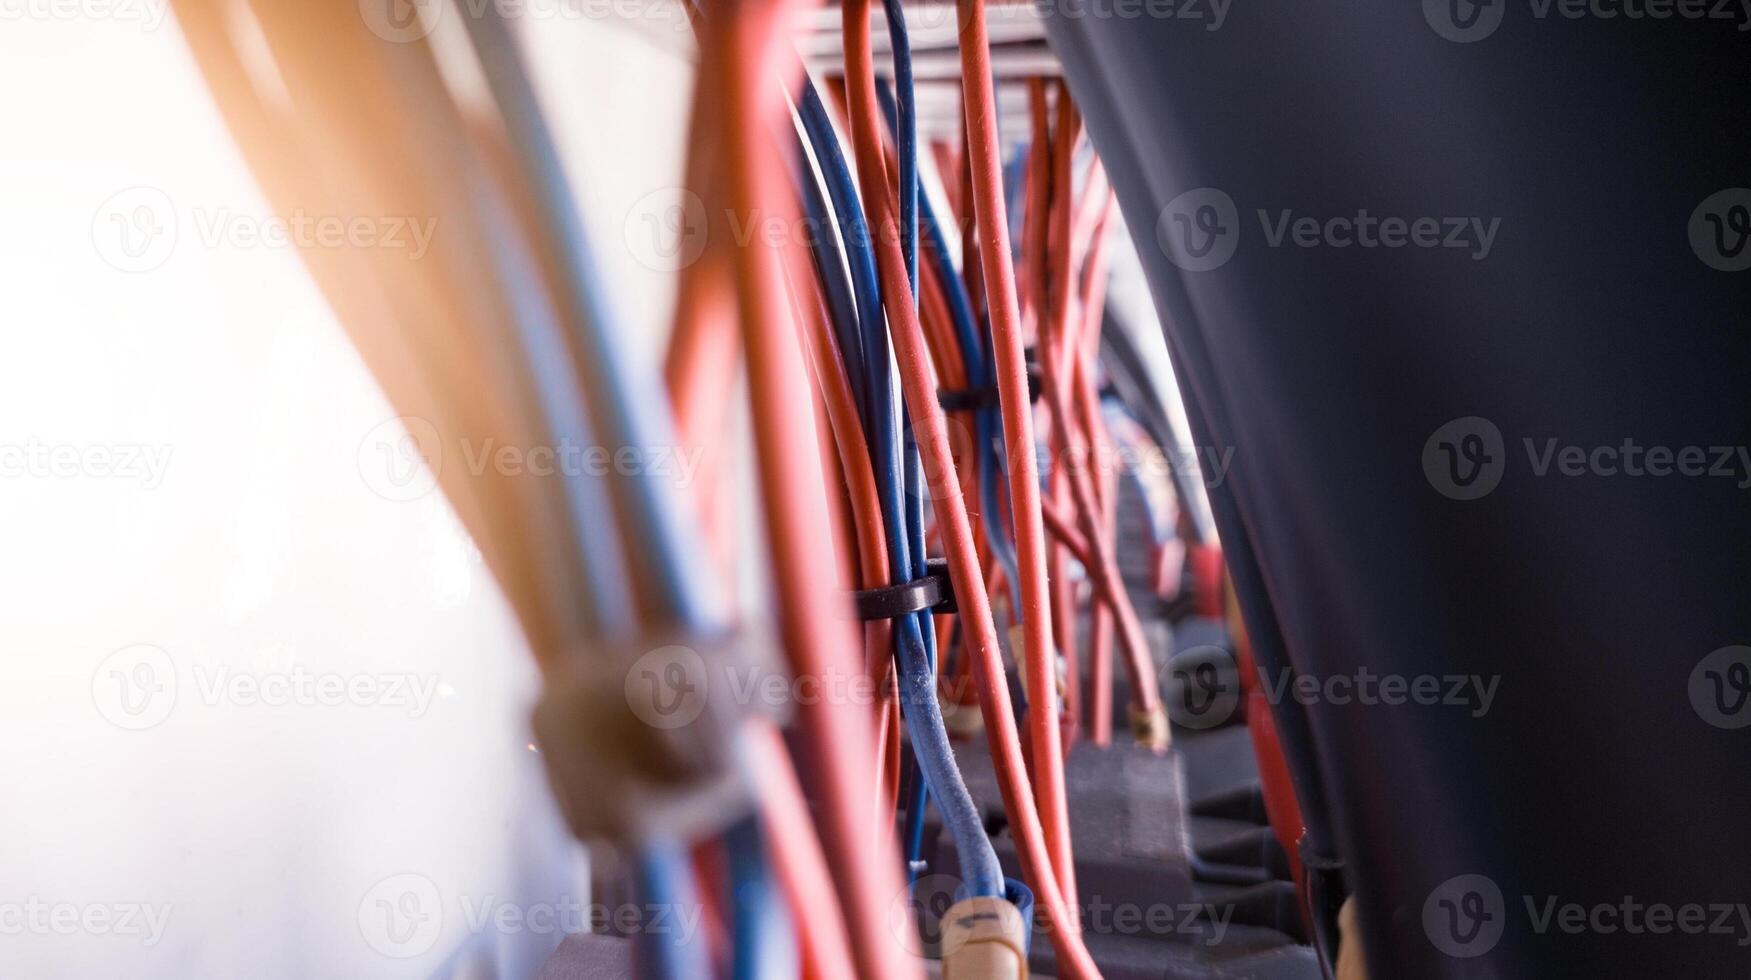 installatie van bedrading controle stroomkring ,circuit kabel controle voor controle machines. foto